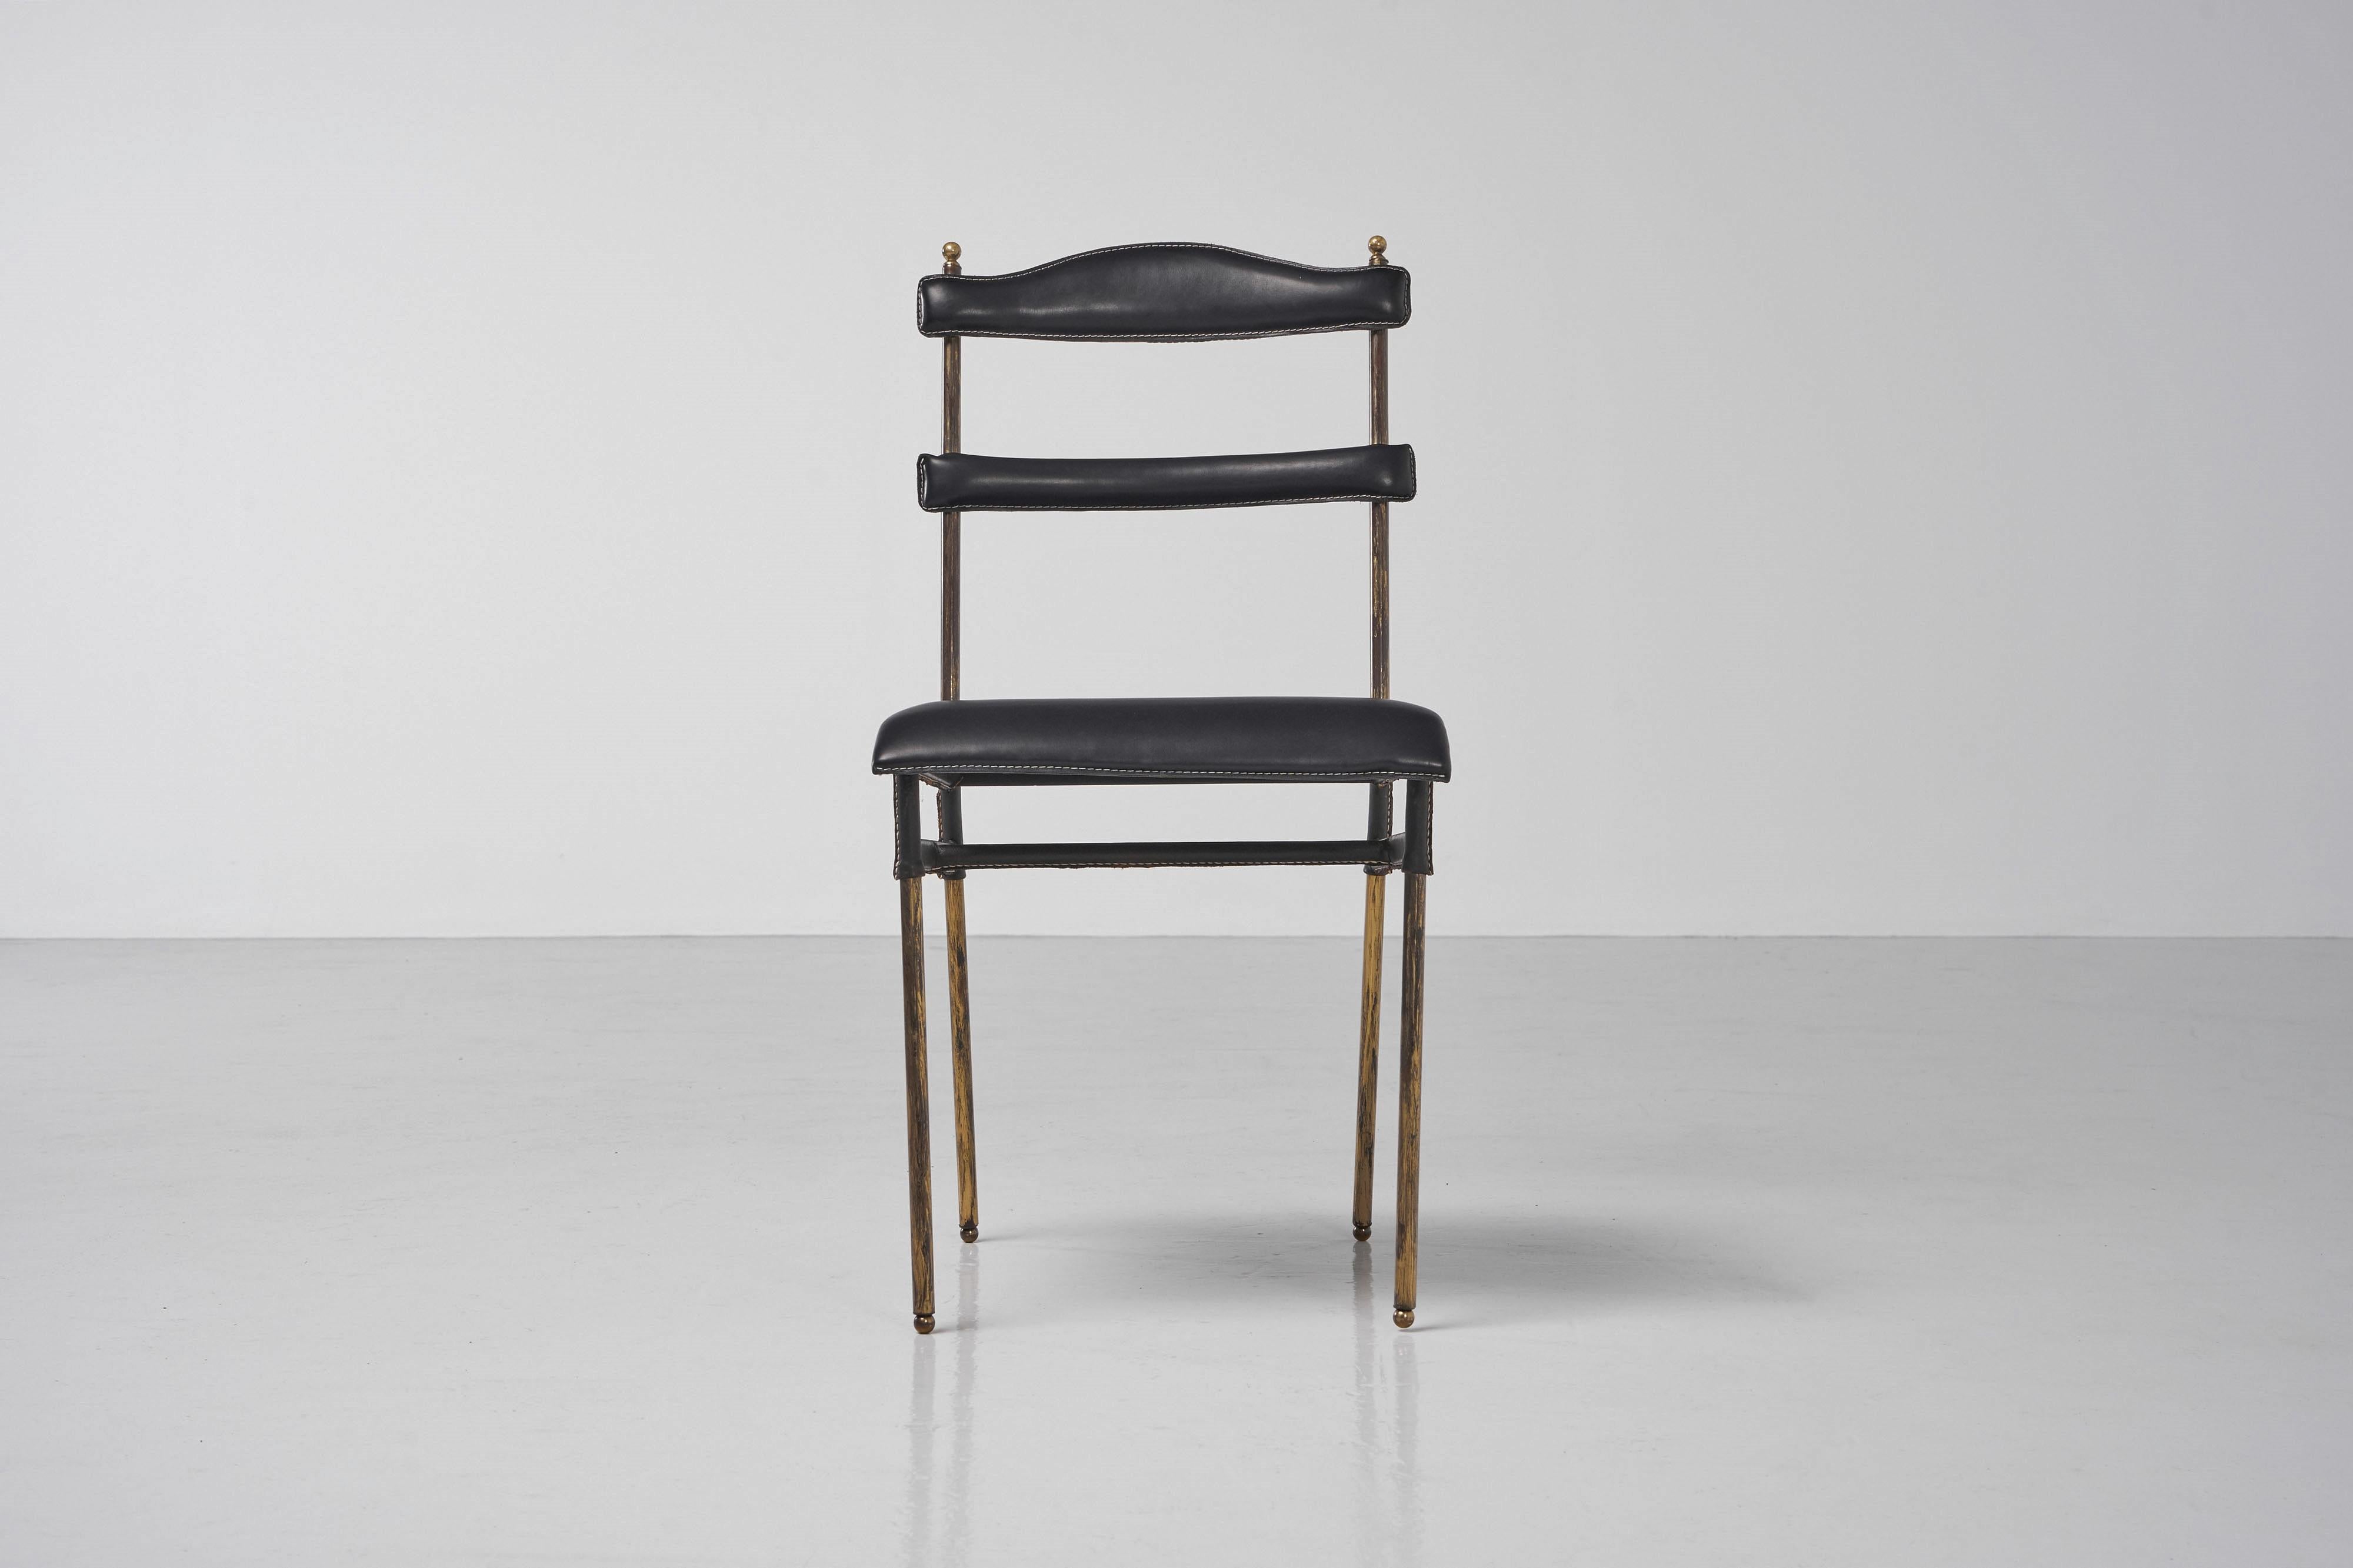 Schöner Beistellstuhl aus Leder und Messing, entworfen von Jacques Adnet und hergestellt von Ateliers Jacques Adnet, Frankreich 1950er Jahre. Dieser super elegant geformte und super hochwertige Beistellstuhl hat ein Gestell mit Messingstruktur, das